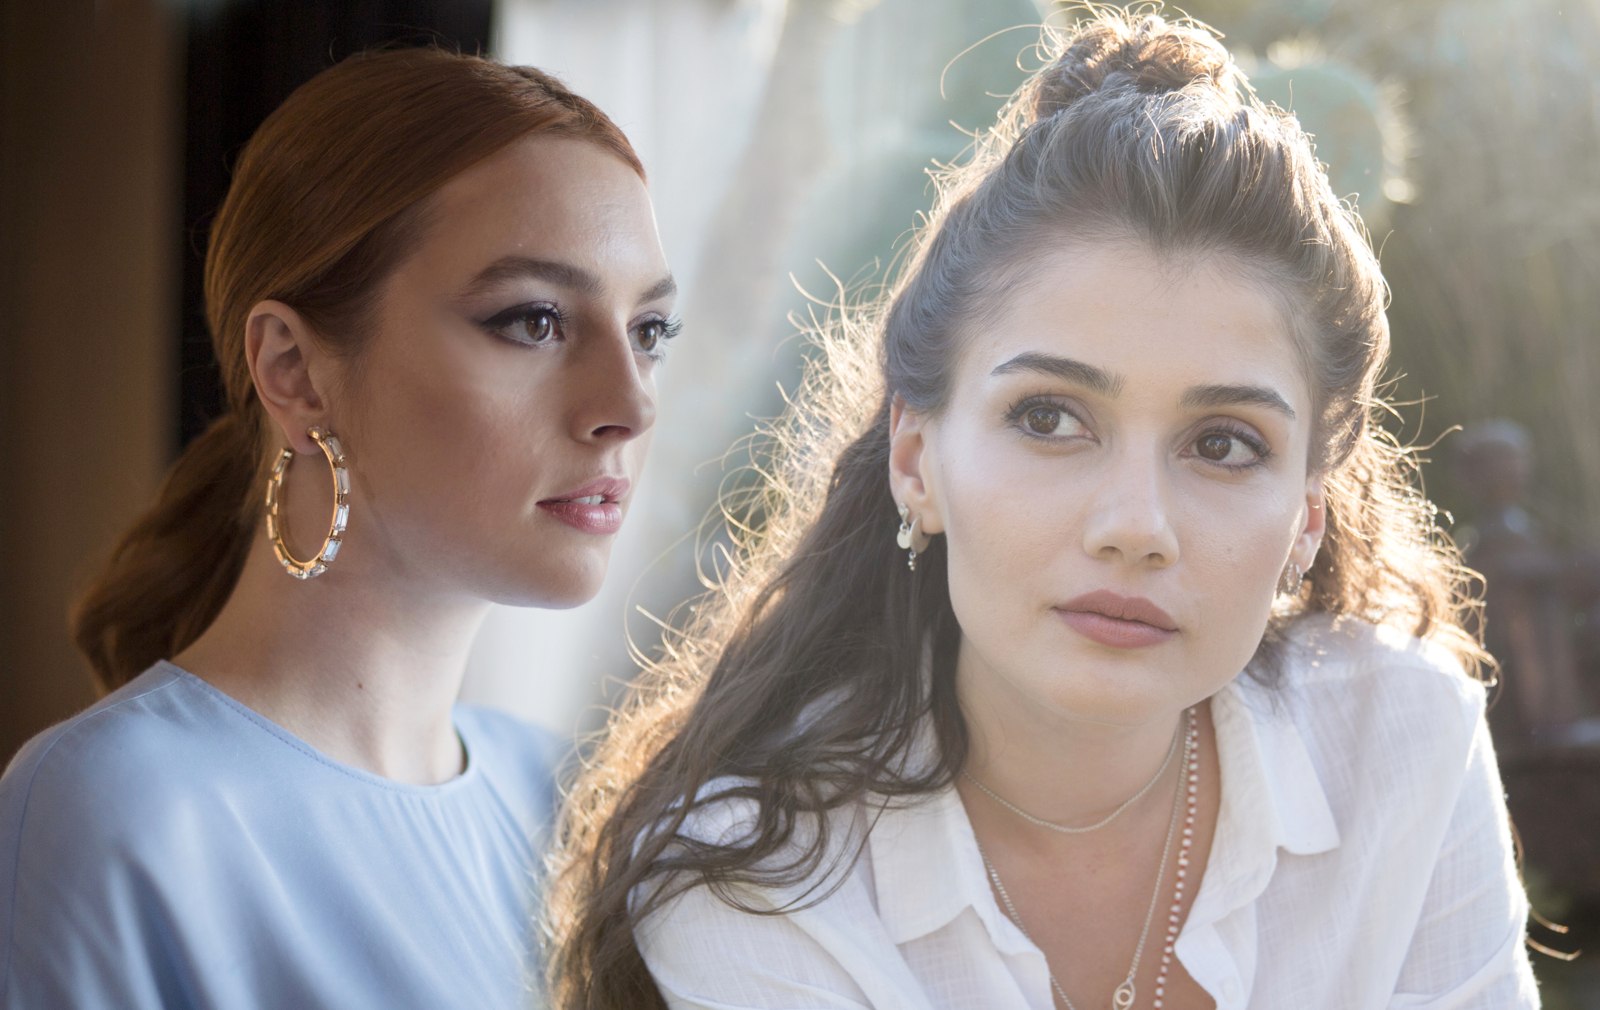 Melis Sezen y Sevda Erginci protagonizan la serie turca Hermanas que estrena Nova el sábado 16 de septiembre